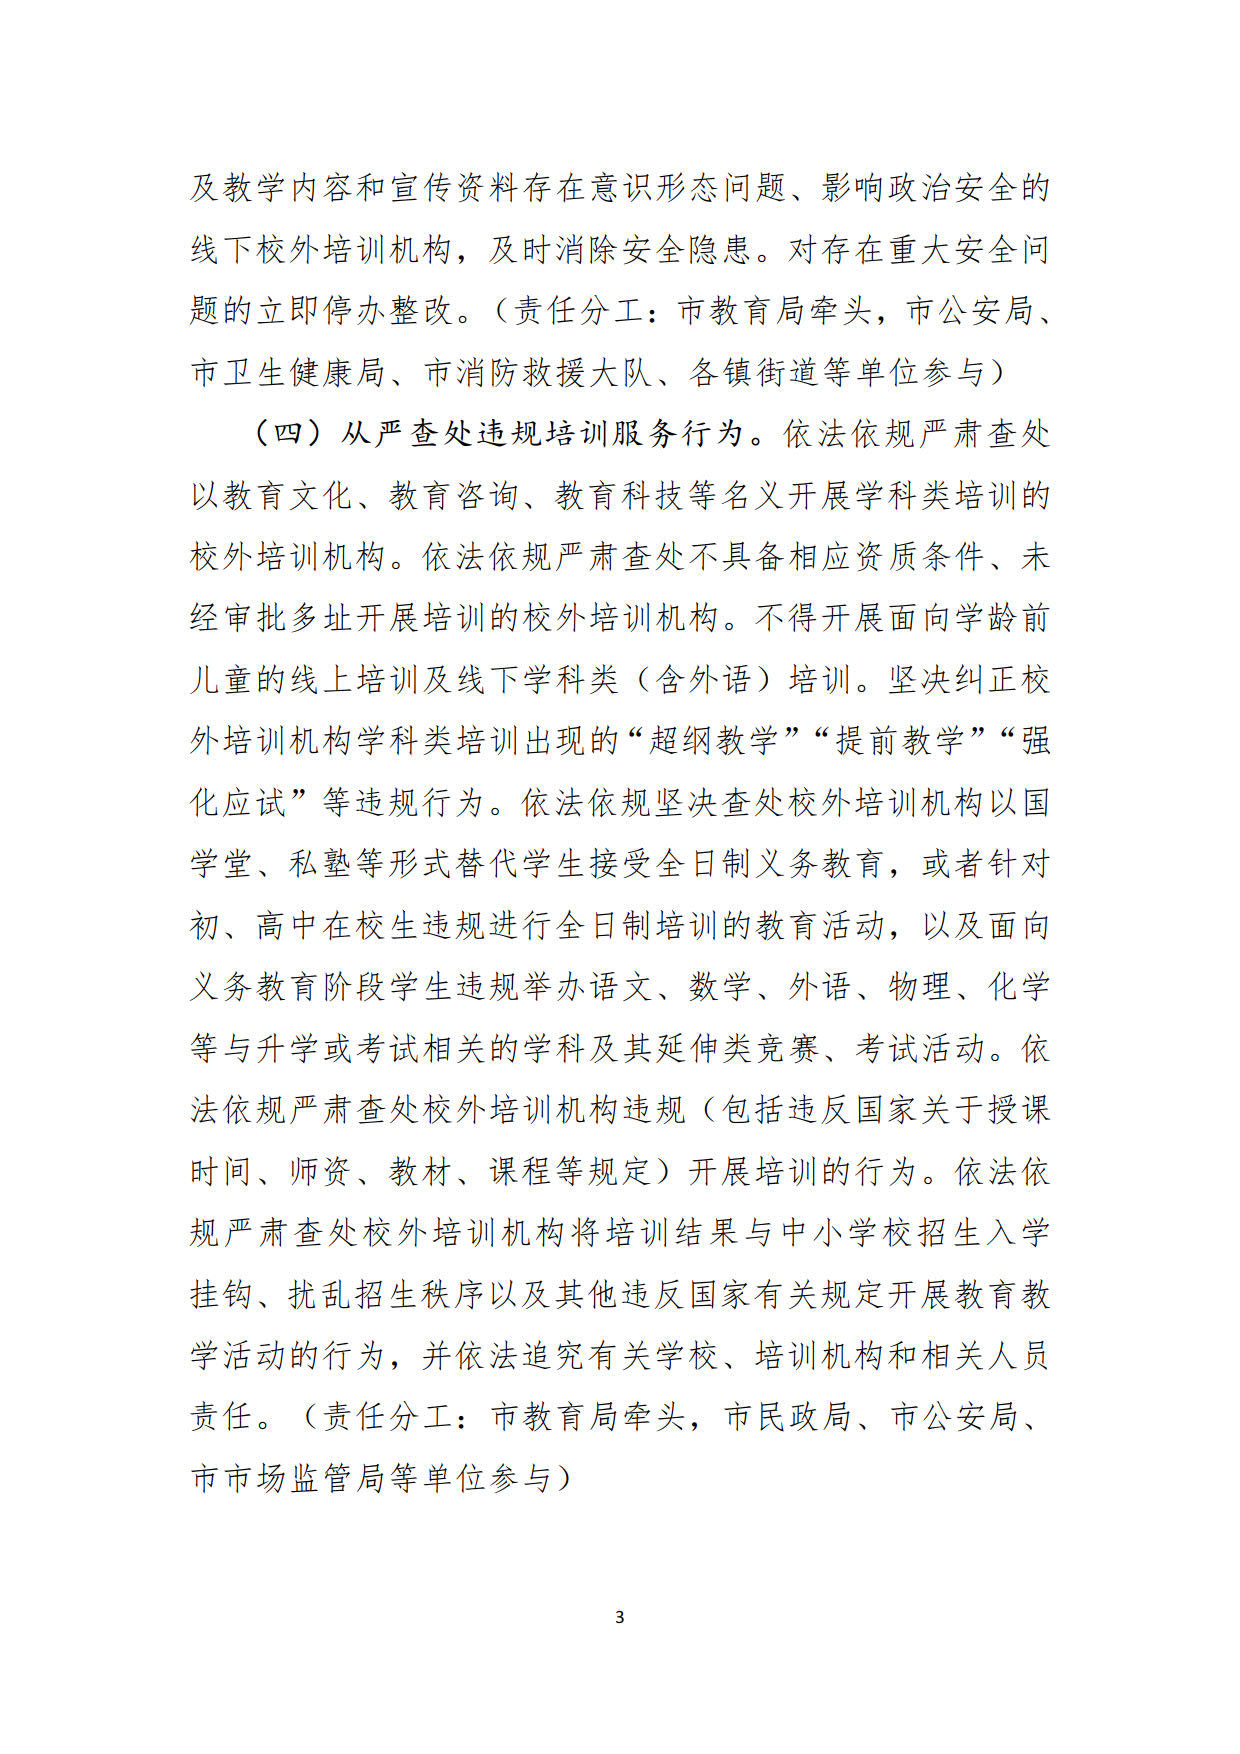 （20211213）兴宁市校外培训机构专项整治方案（征求意见稿）_3.jpg